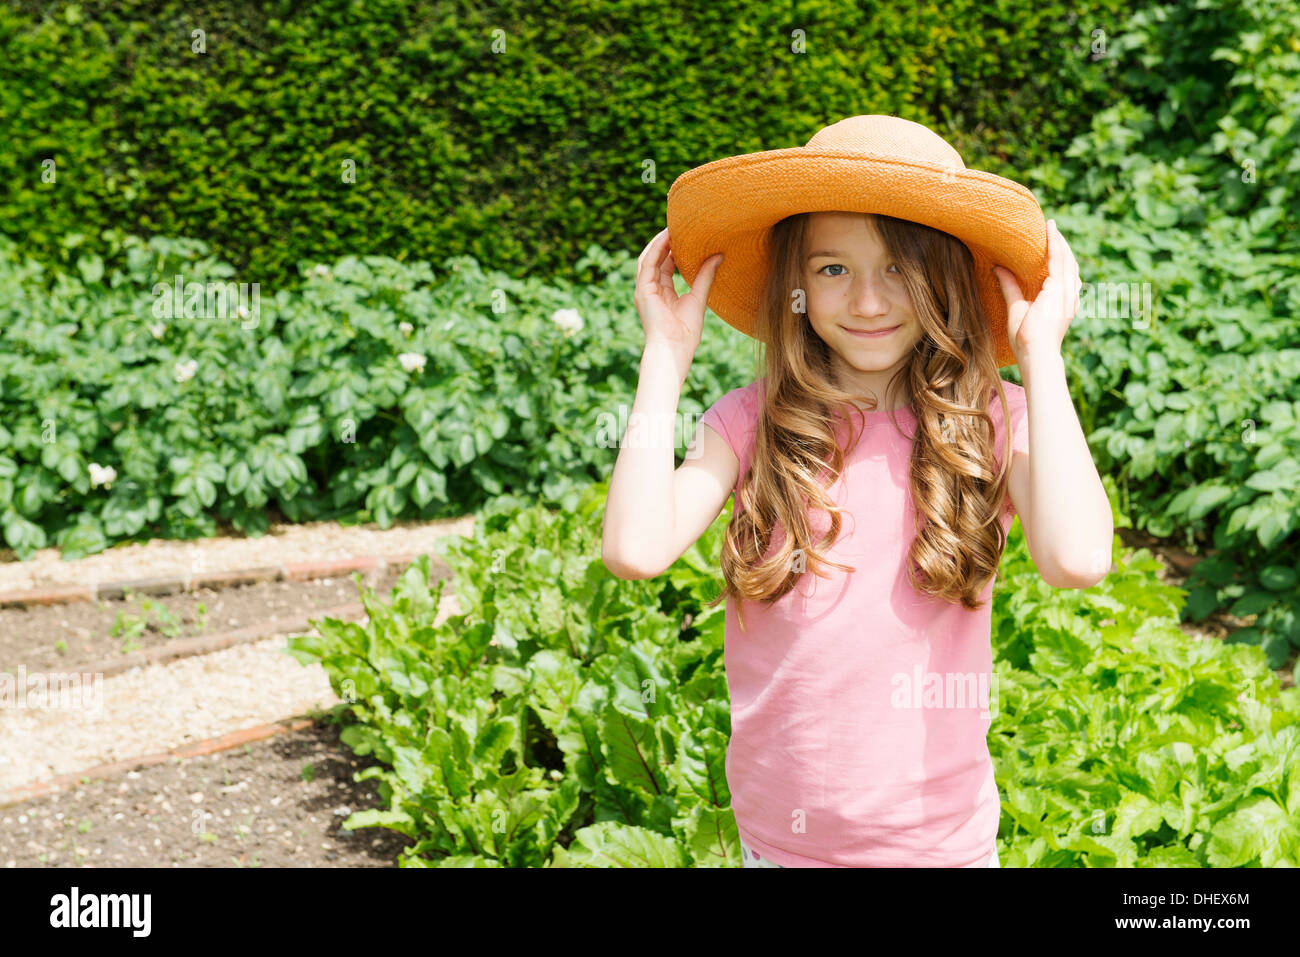 Vestida de sombrero de paja en el jardín Foto de stock